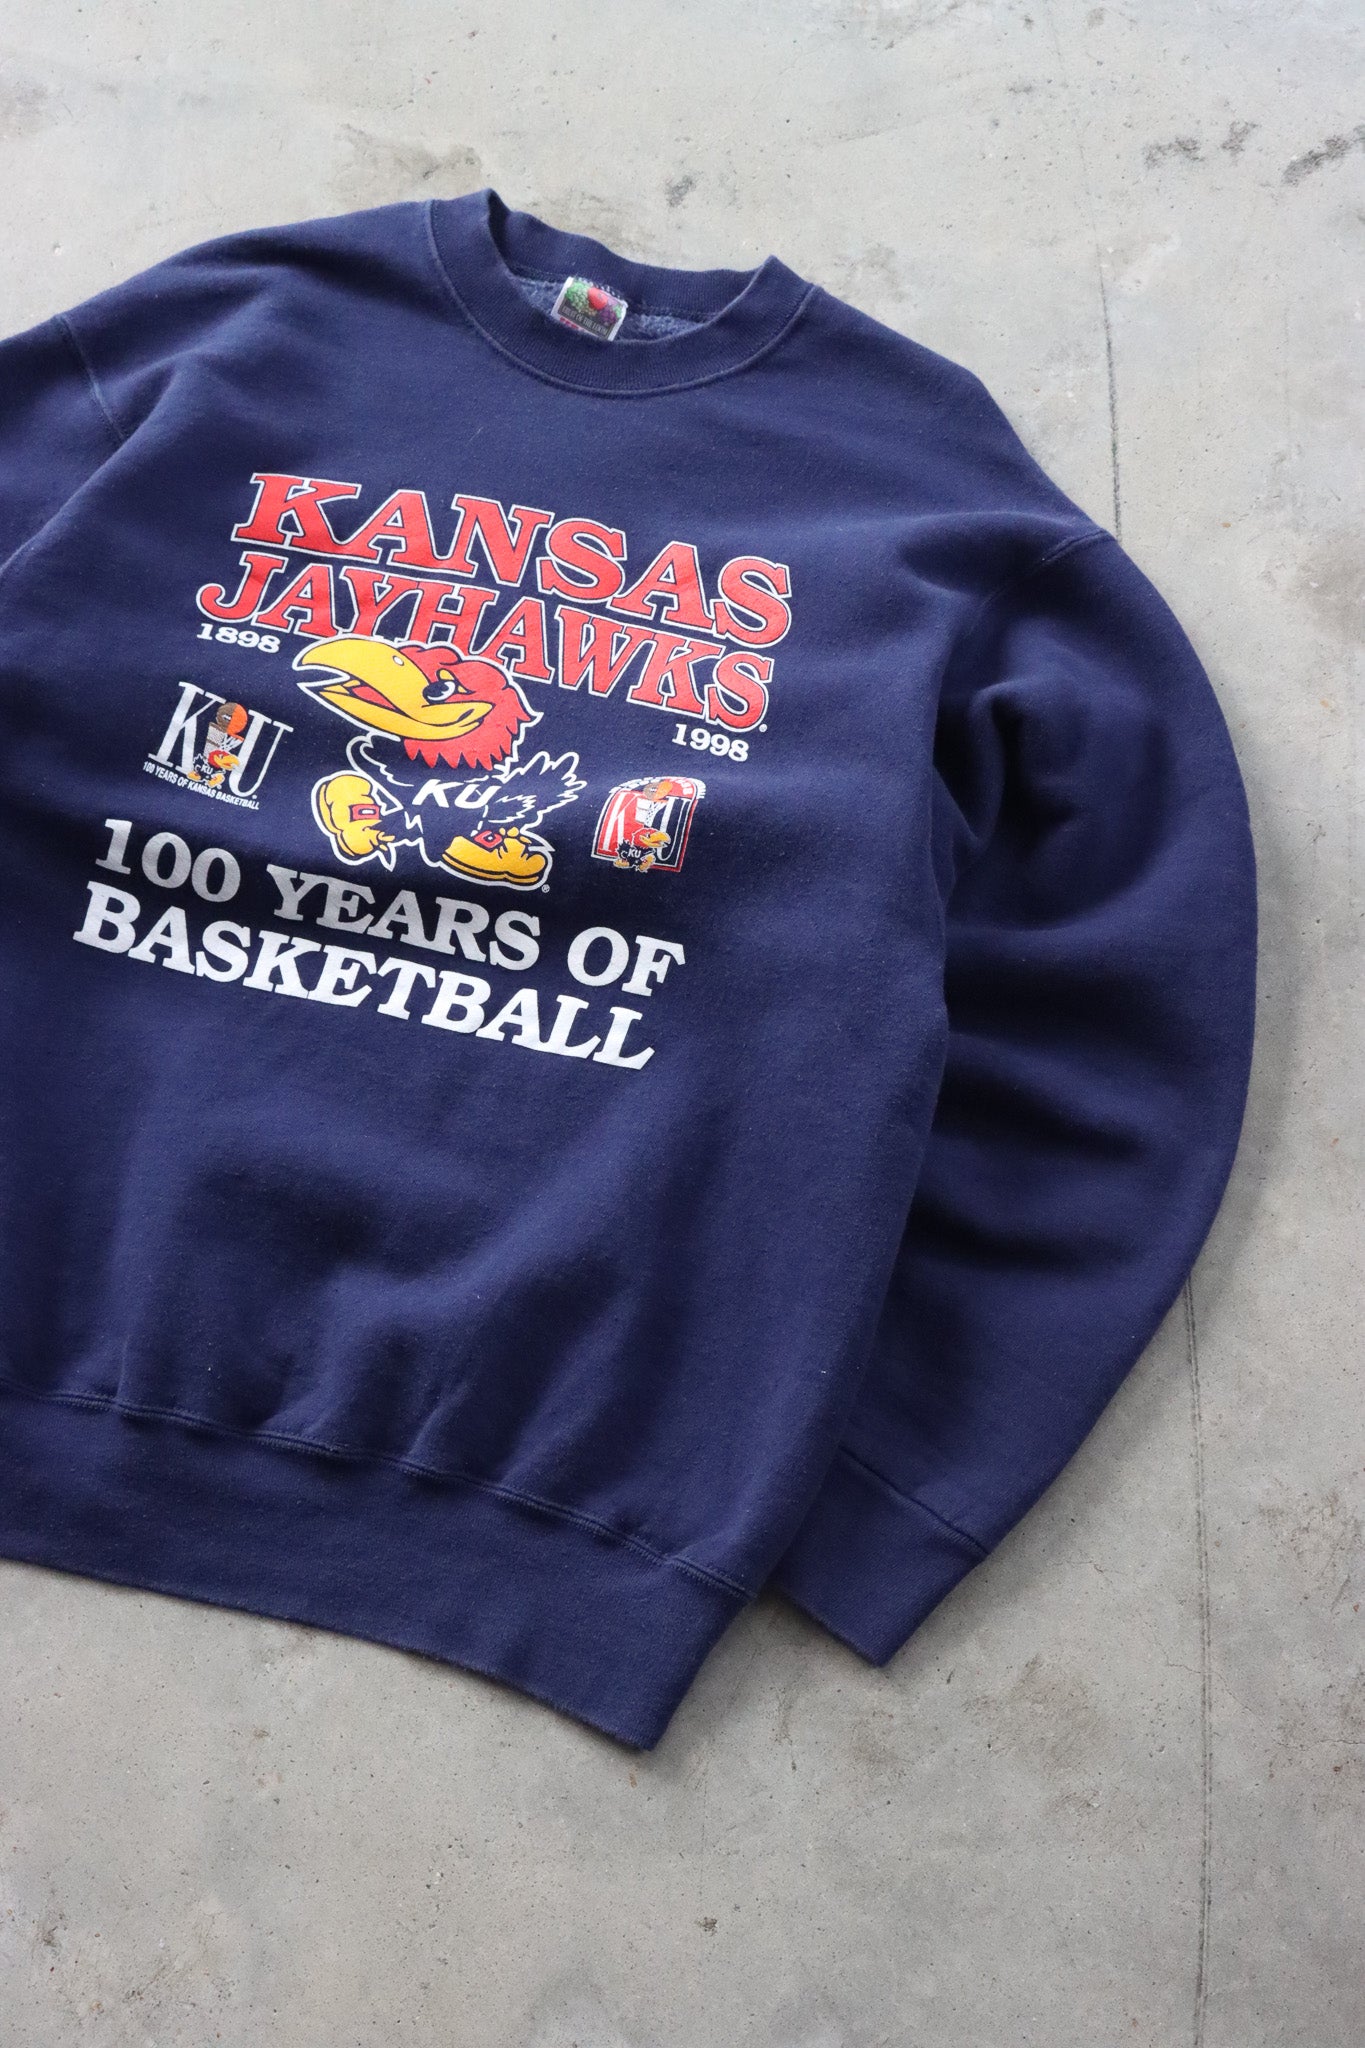 Vintage Kansas Jayhawks Sweater Medium